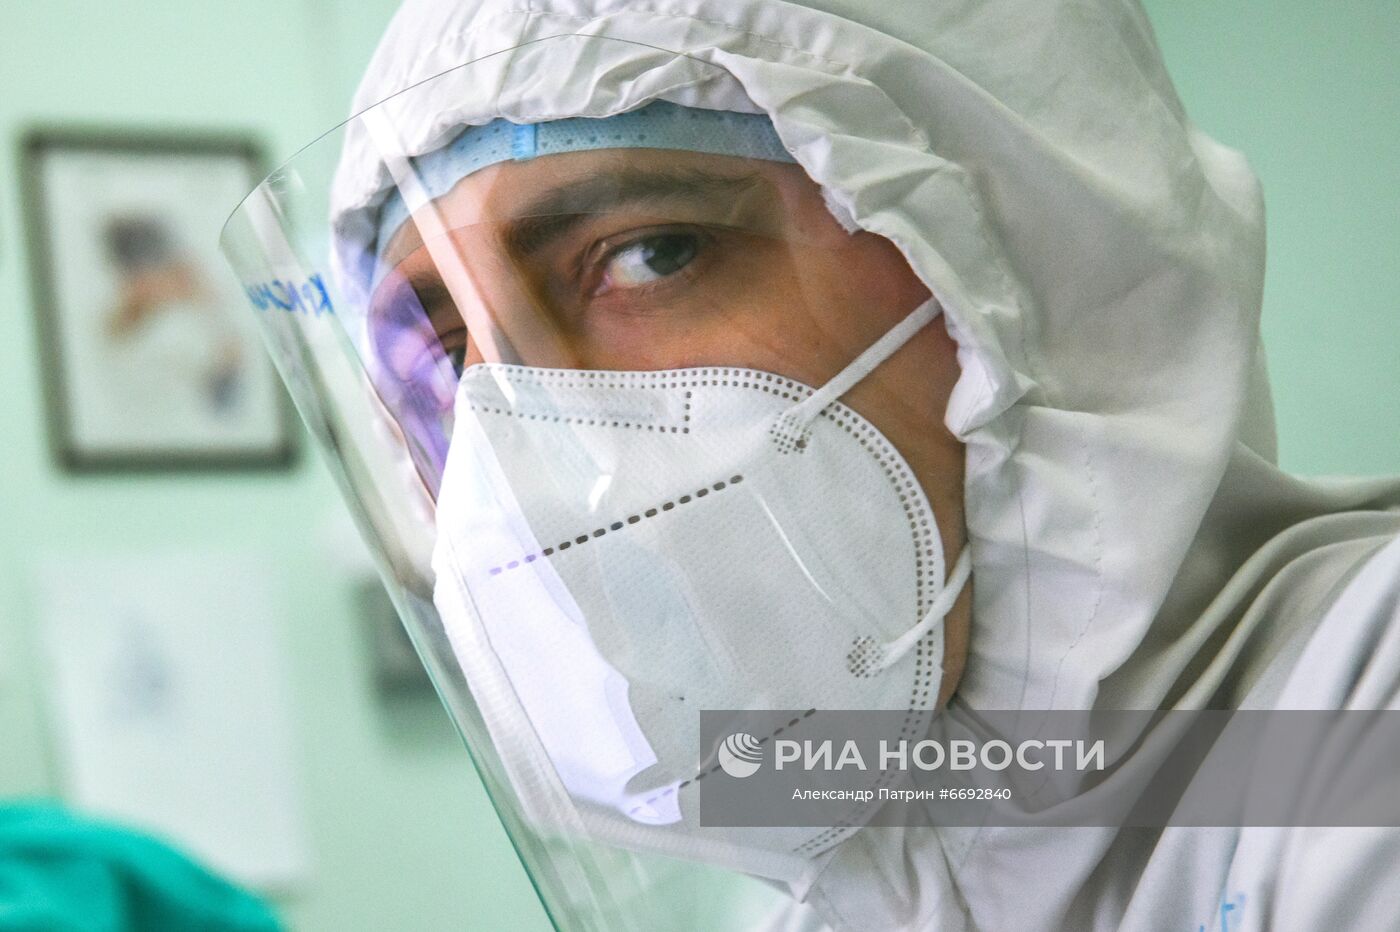 Отделение для пациентов с Covid-19 в Кузбасской клинической больнице им. М. Подгорбунского